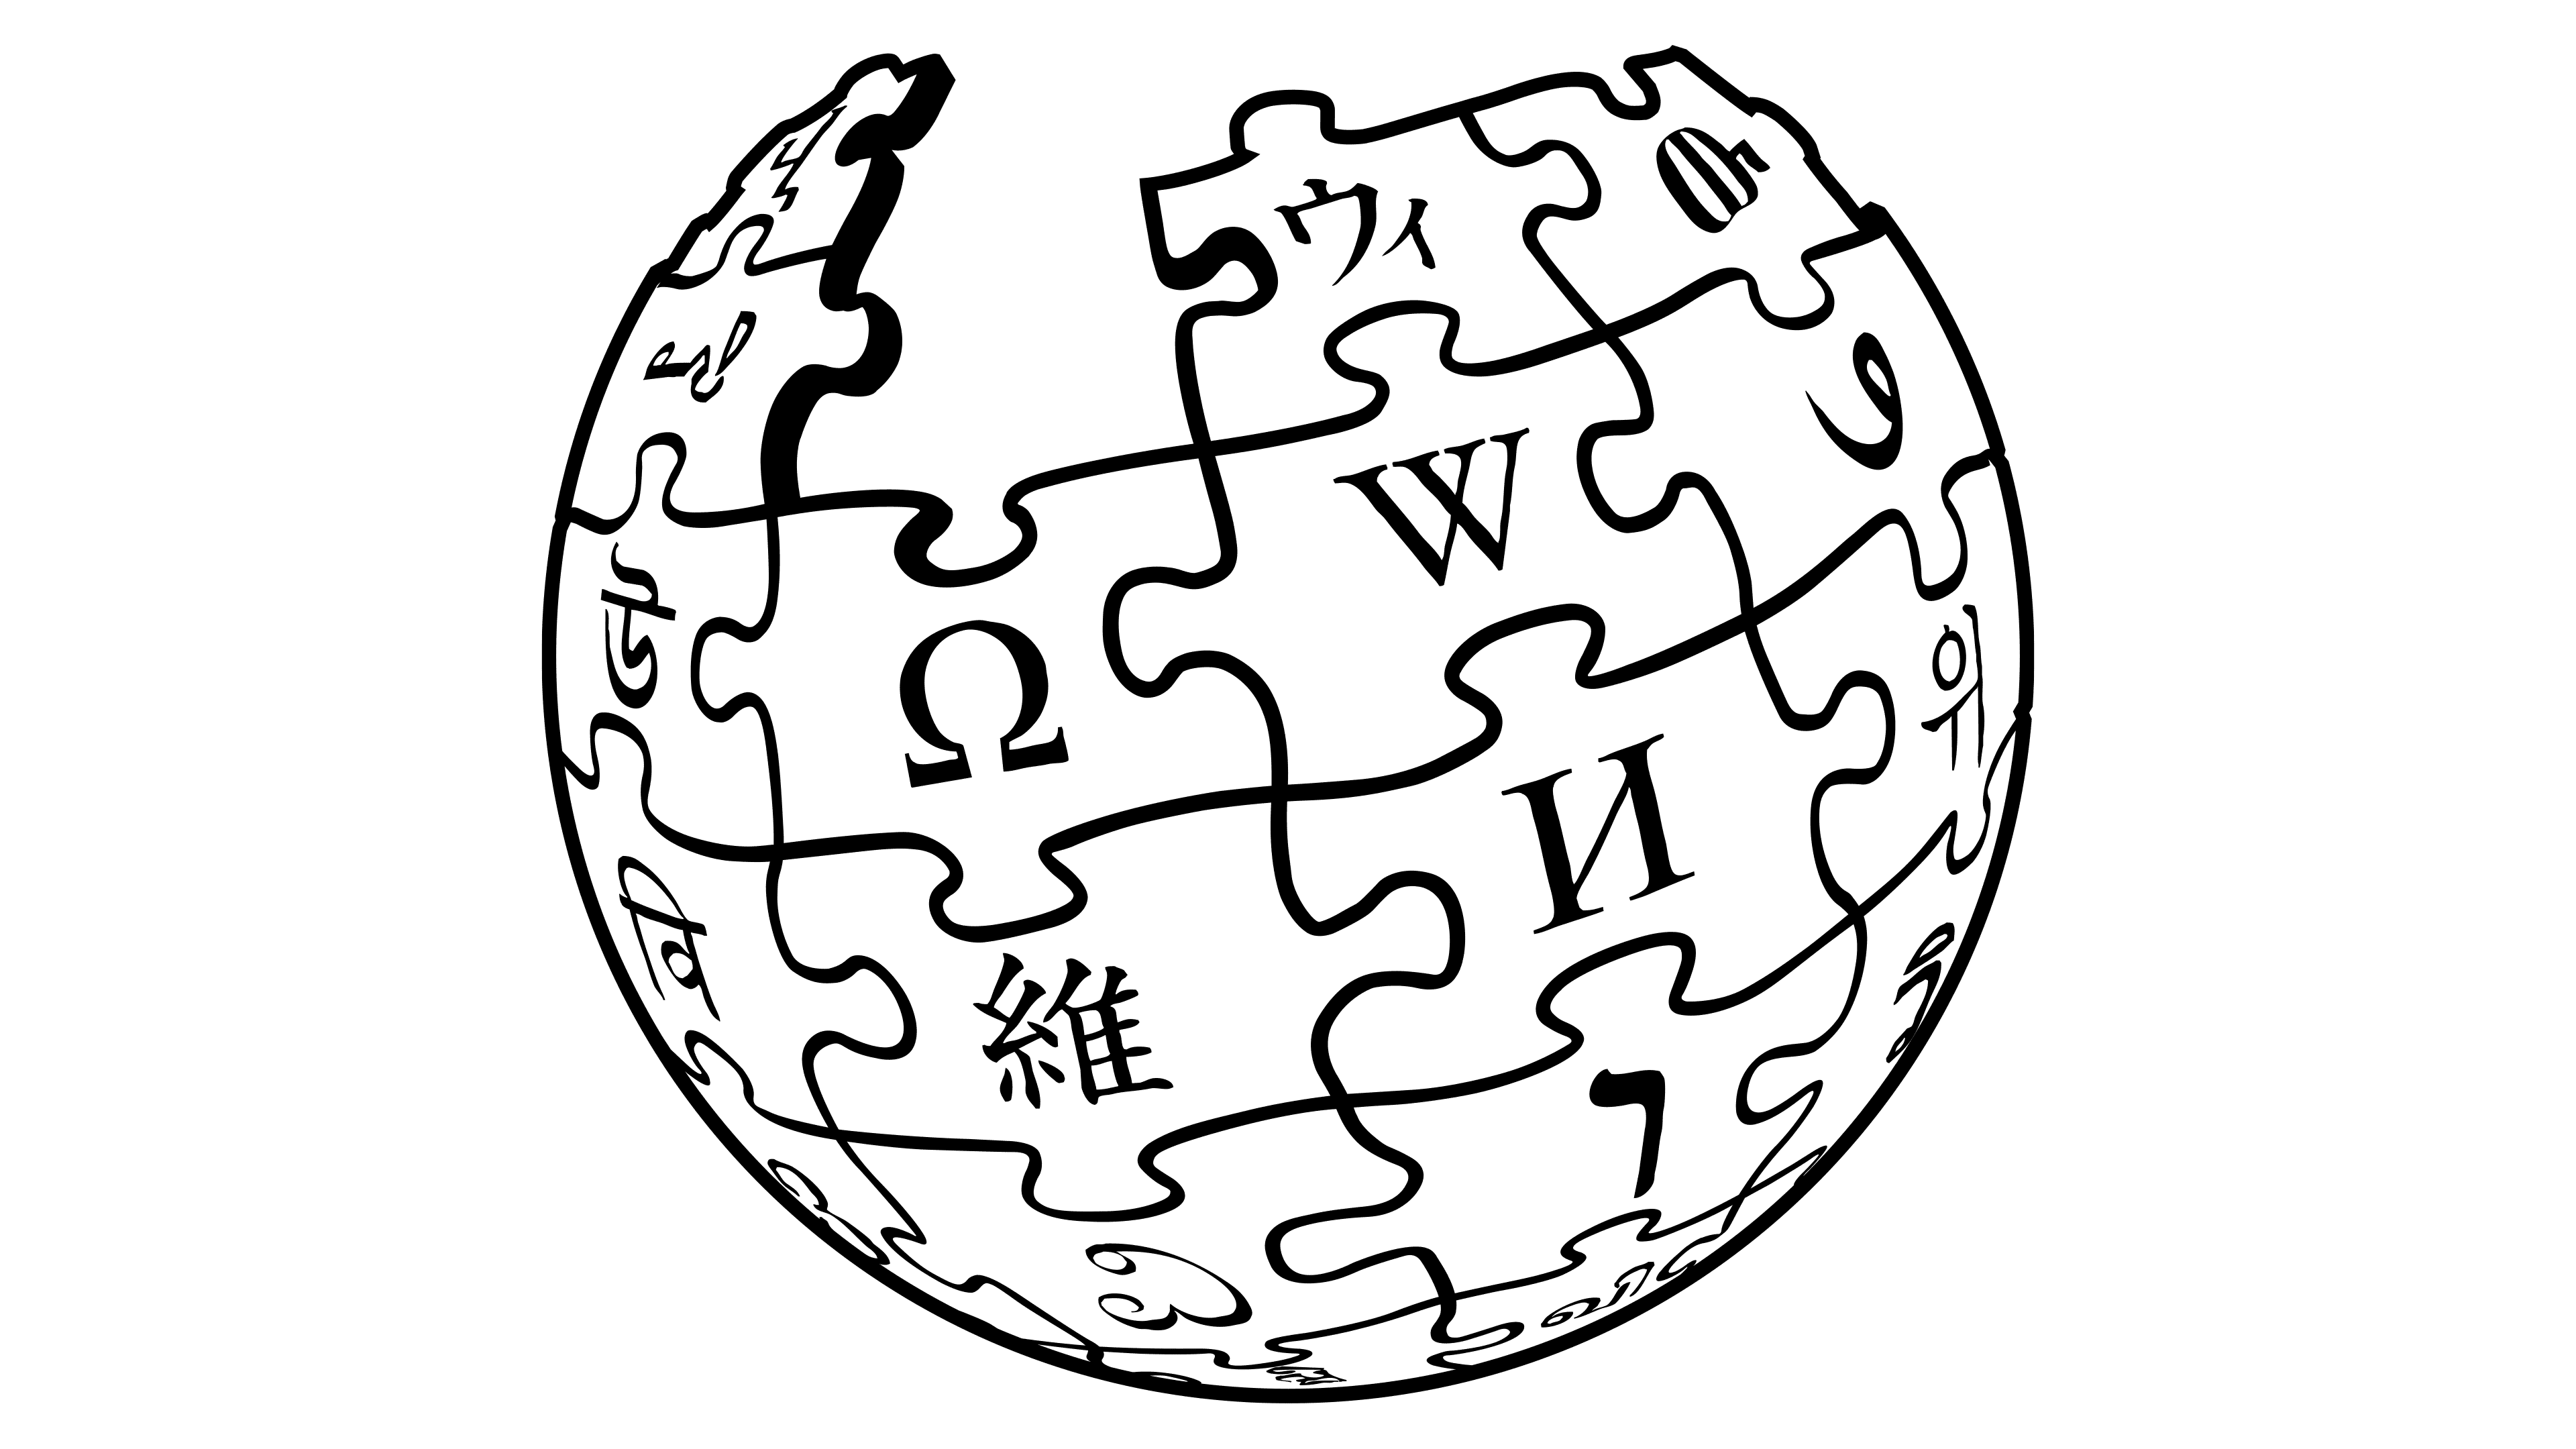 Https www wikipedia. Wikipedia logo. Википедия иконка. Википедия эмблема. Wikipedia logo 2001.